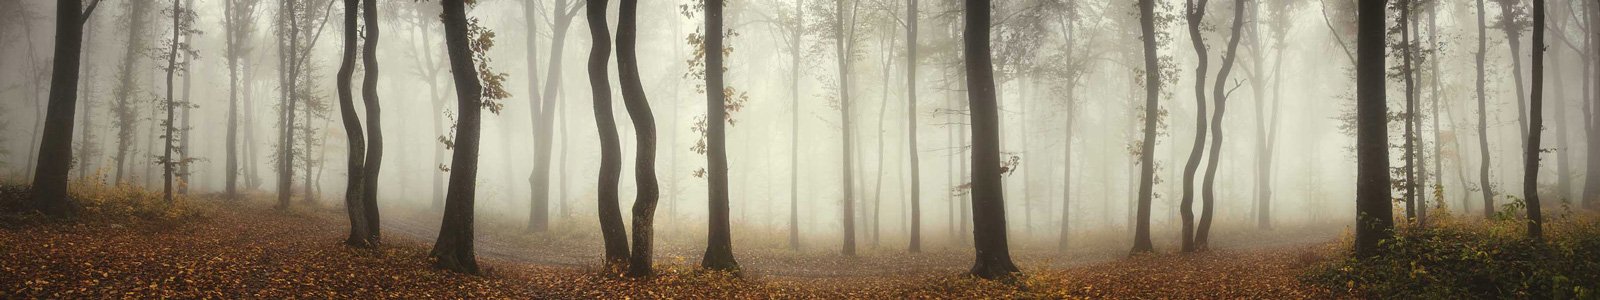 №6872 - Осенний лес в тумане